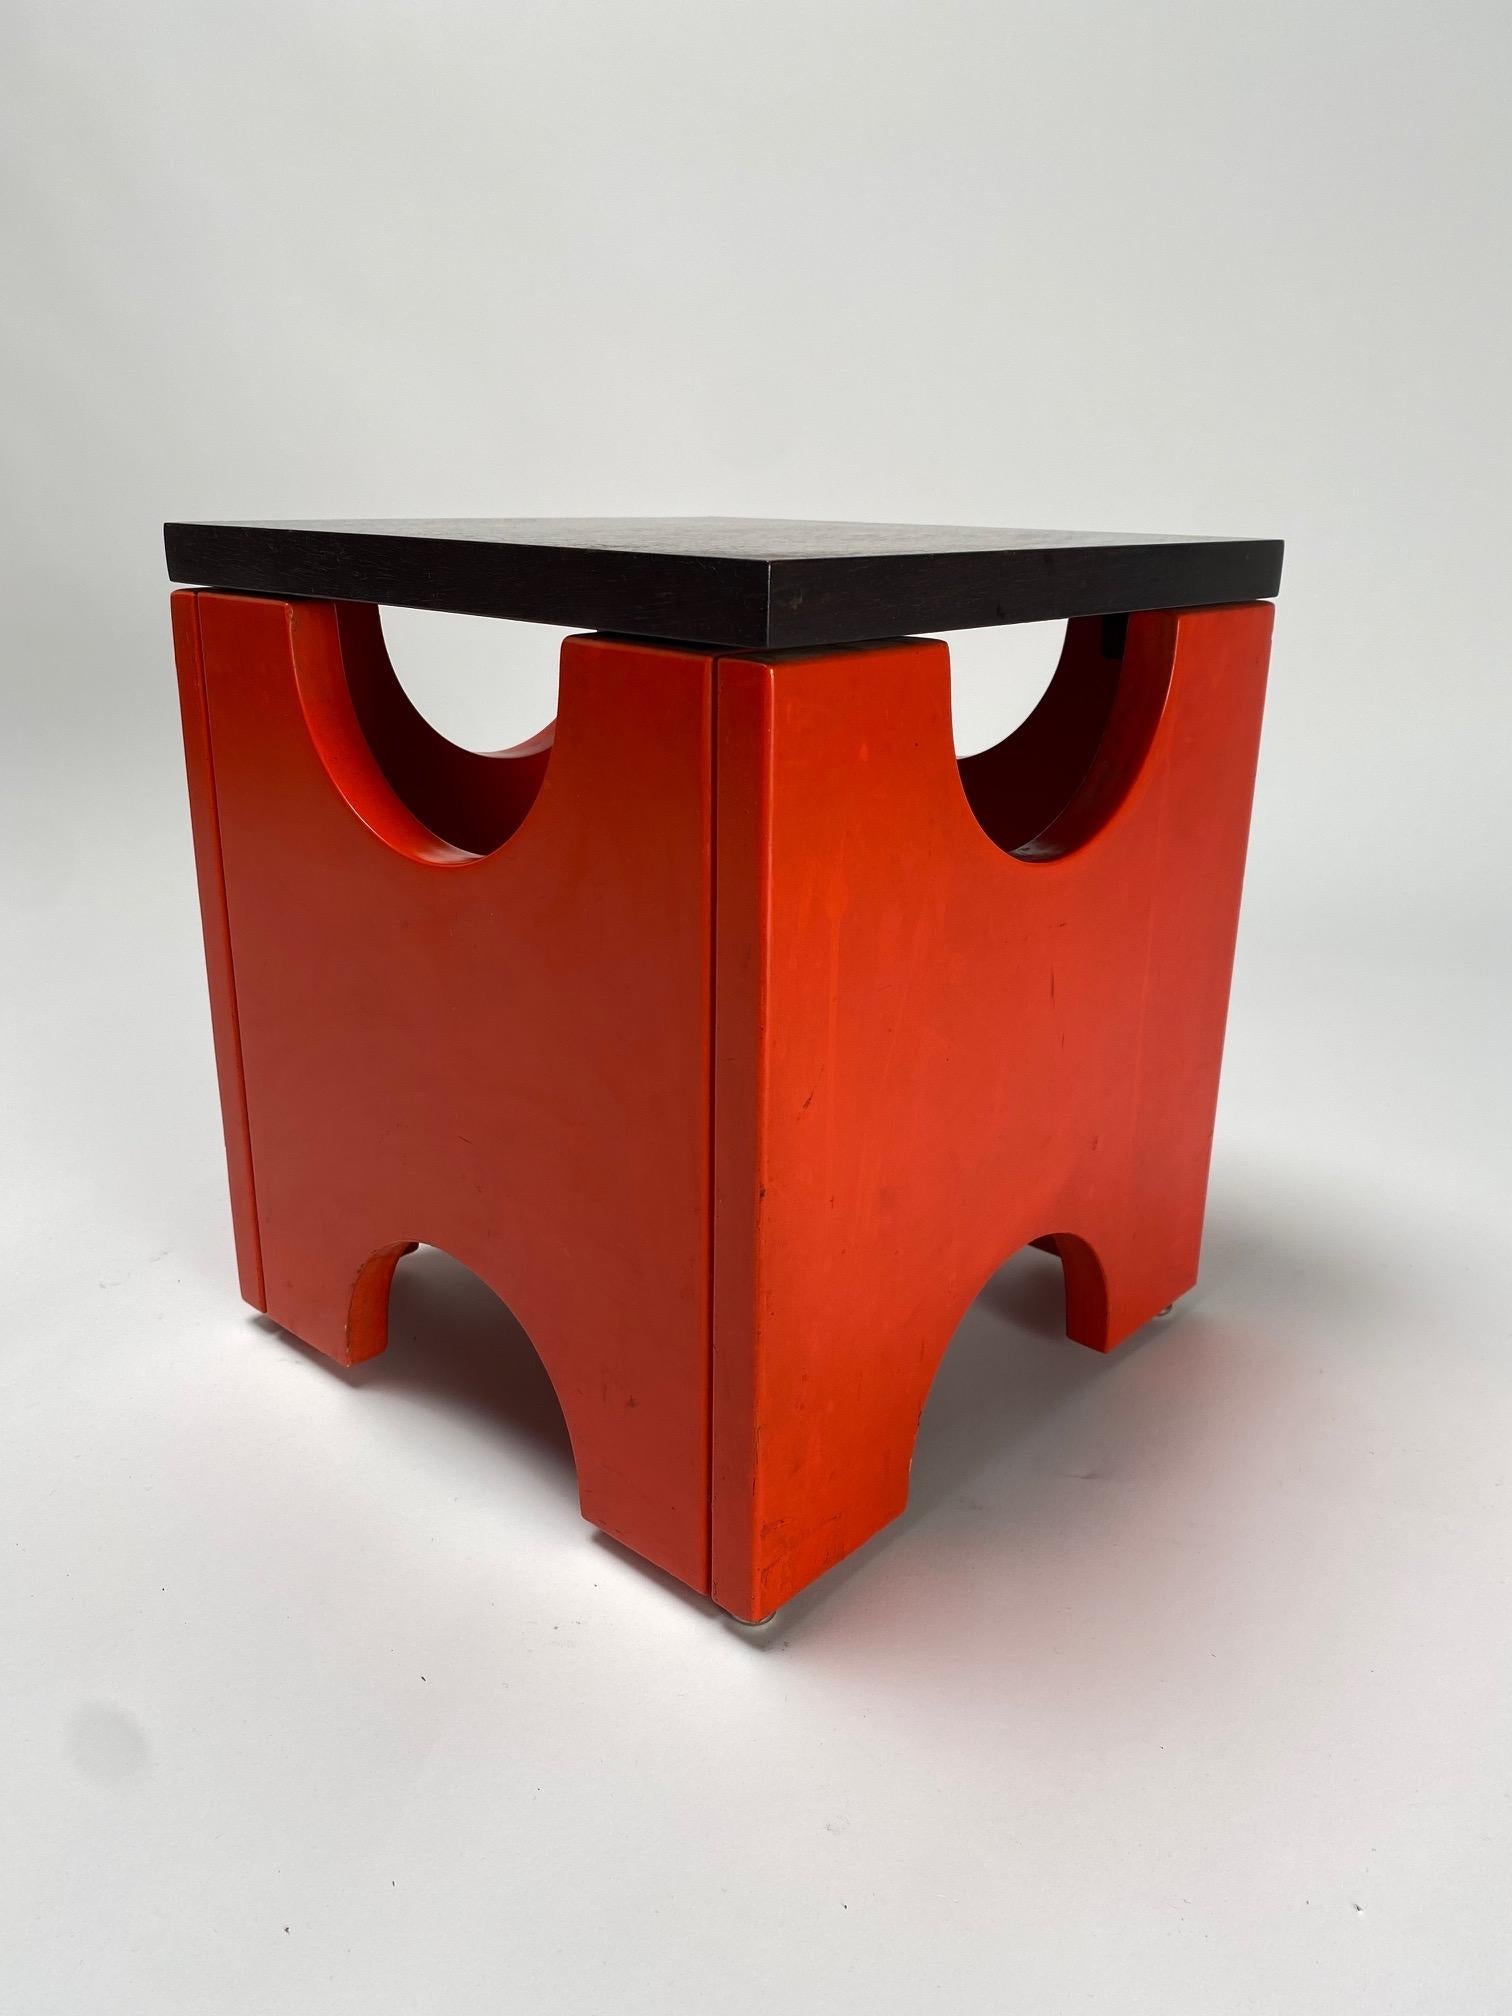 Ettore Sottsass, tabouret Dado T29, production Poltronova, Italie, années 1960

  Il s'agit de l'une des œuvres les plus emblématiques du célèbre architecte et designer italien Ettore Sottsass. La base en bois est peinte en rouge et le plateau est